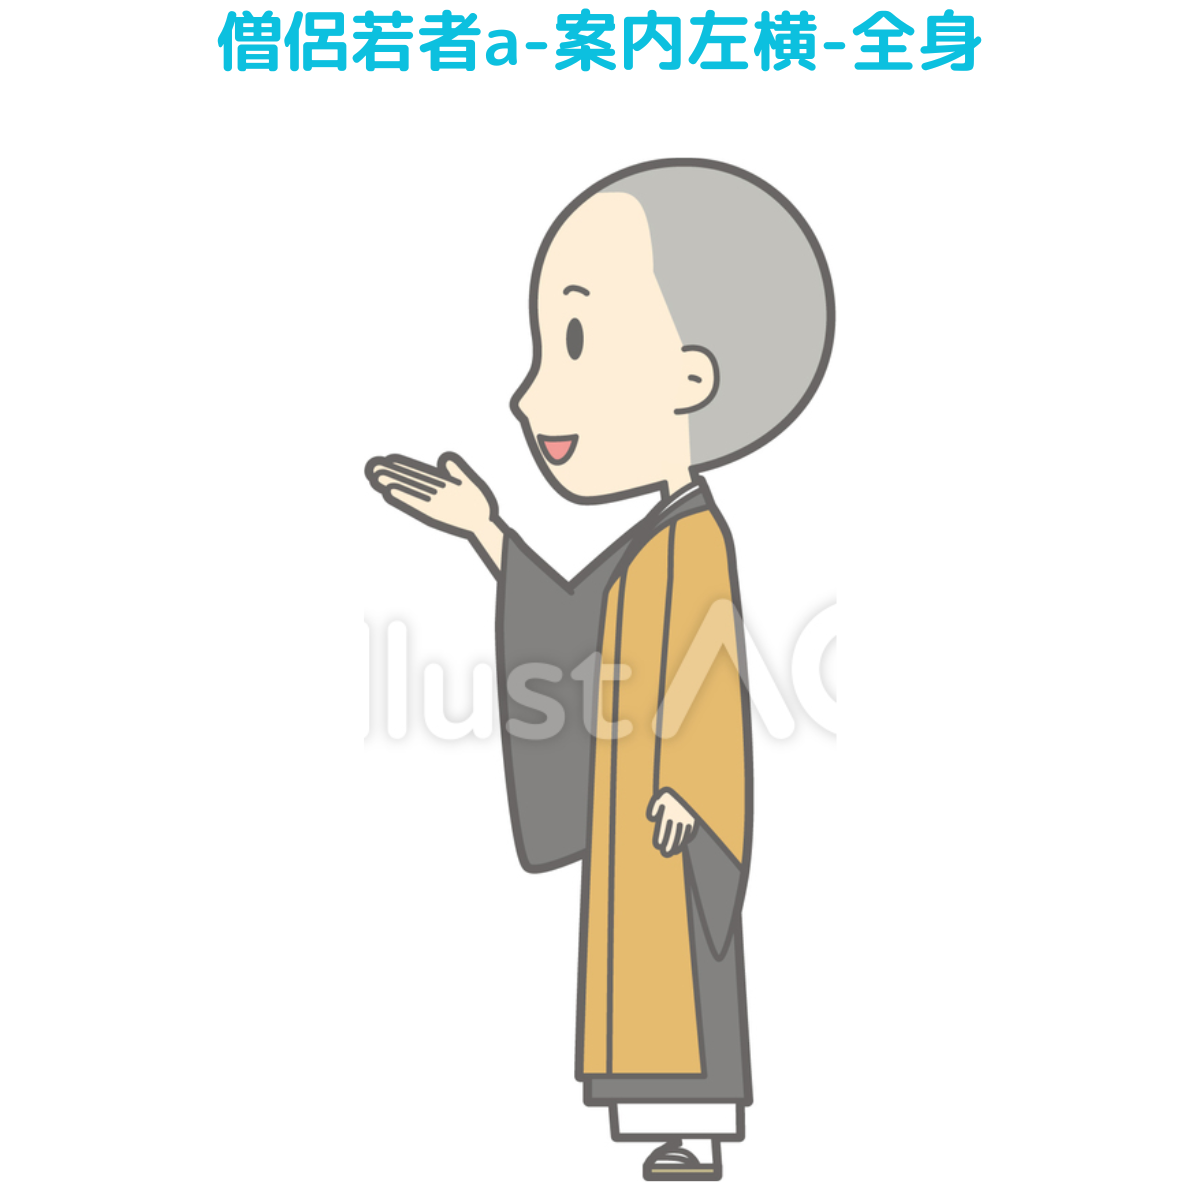 【イラスト20選】着物・男・横向きの画像15件目。僧侶若者a-案内左横-全身全身の画像